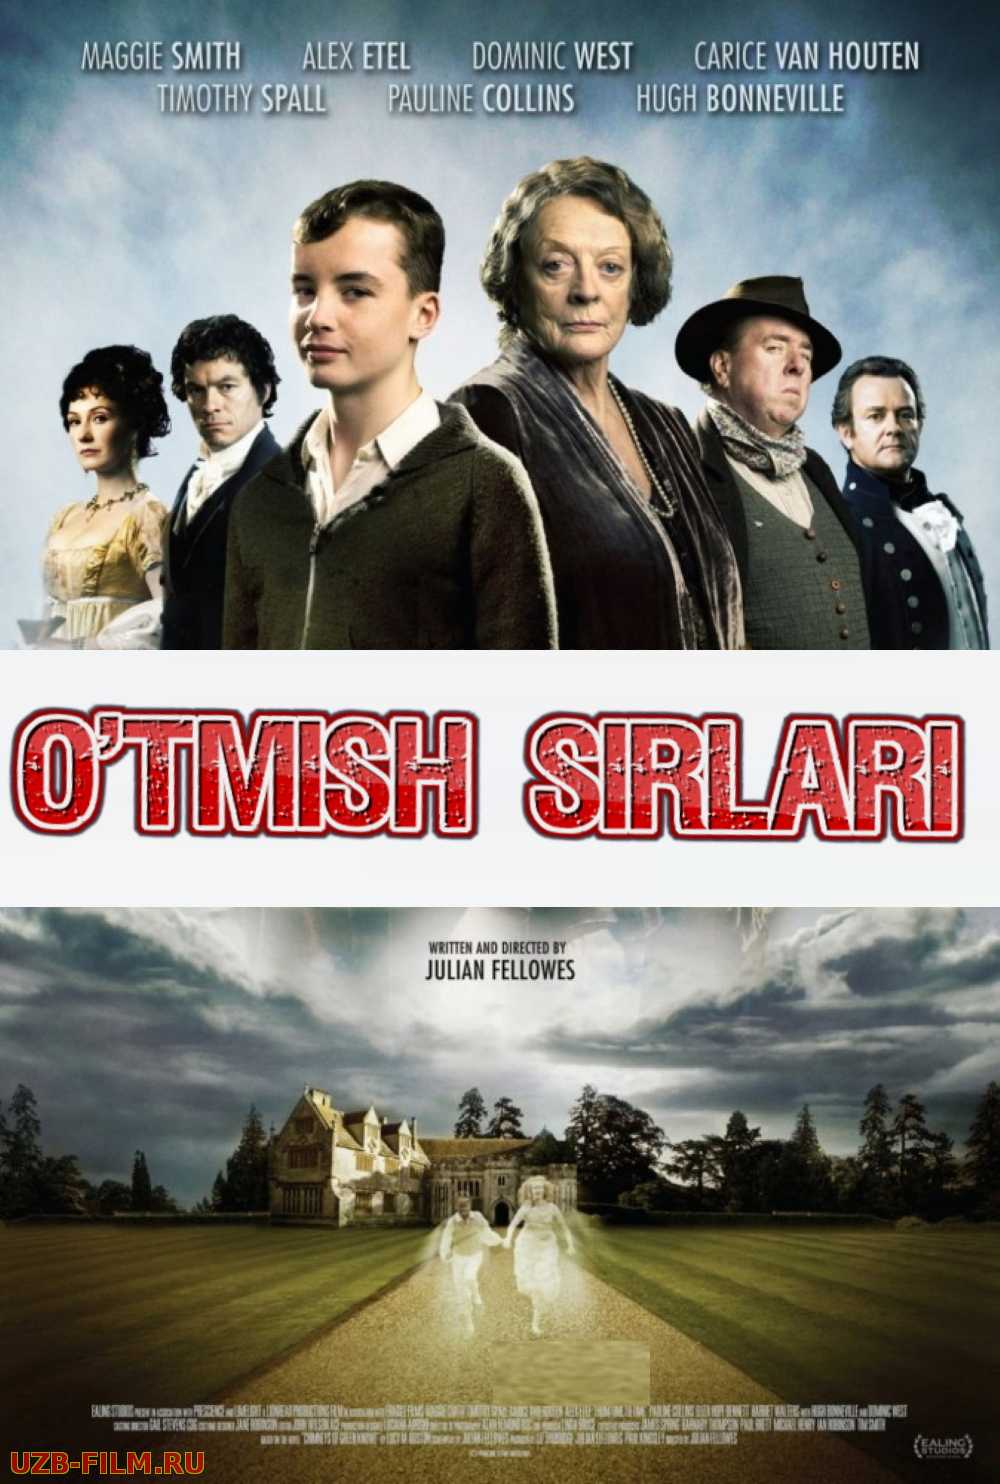 O'tmish sirlari Uzbek tilida 2009 kino